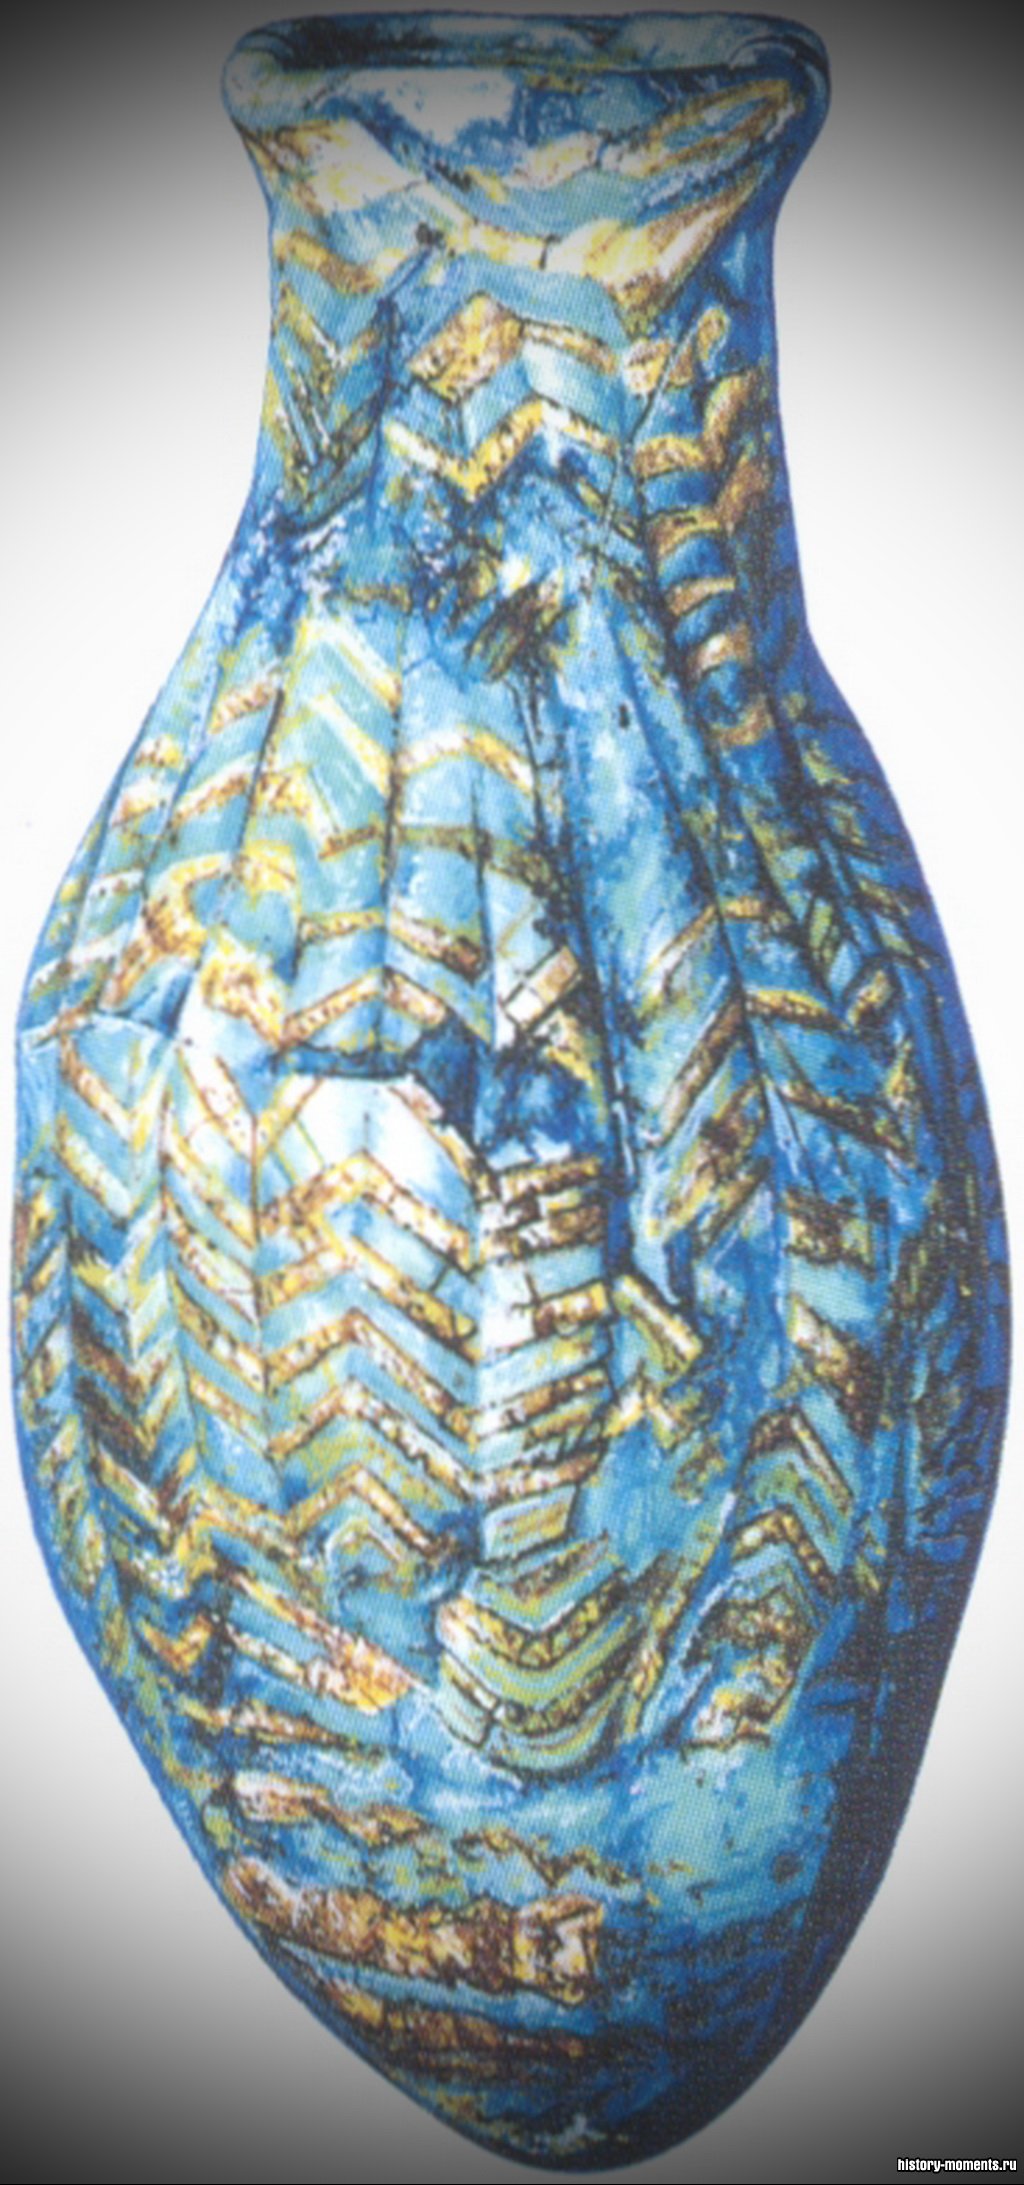 Стеклянная бутыль из касситской могилы в Уре.